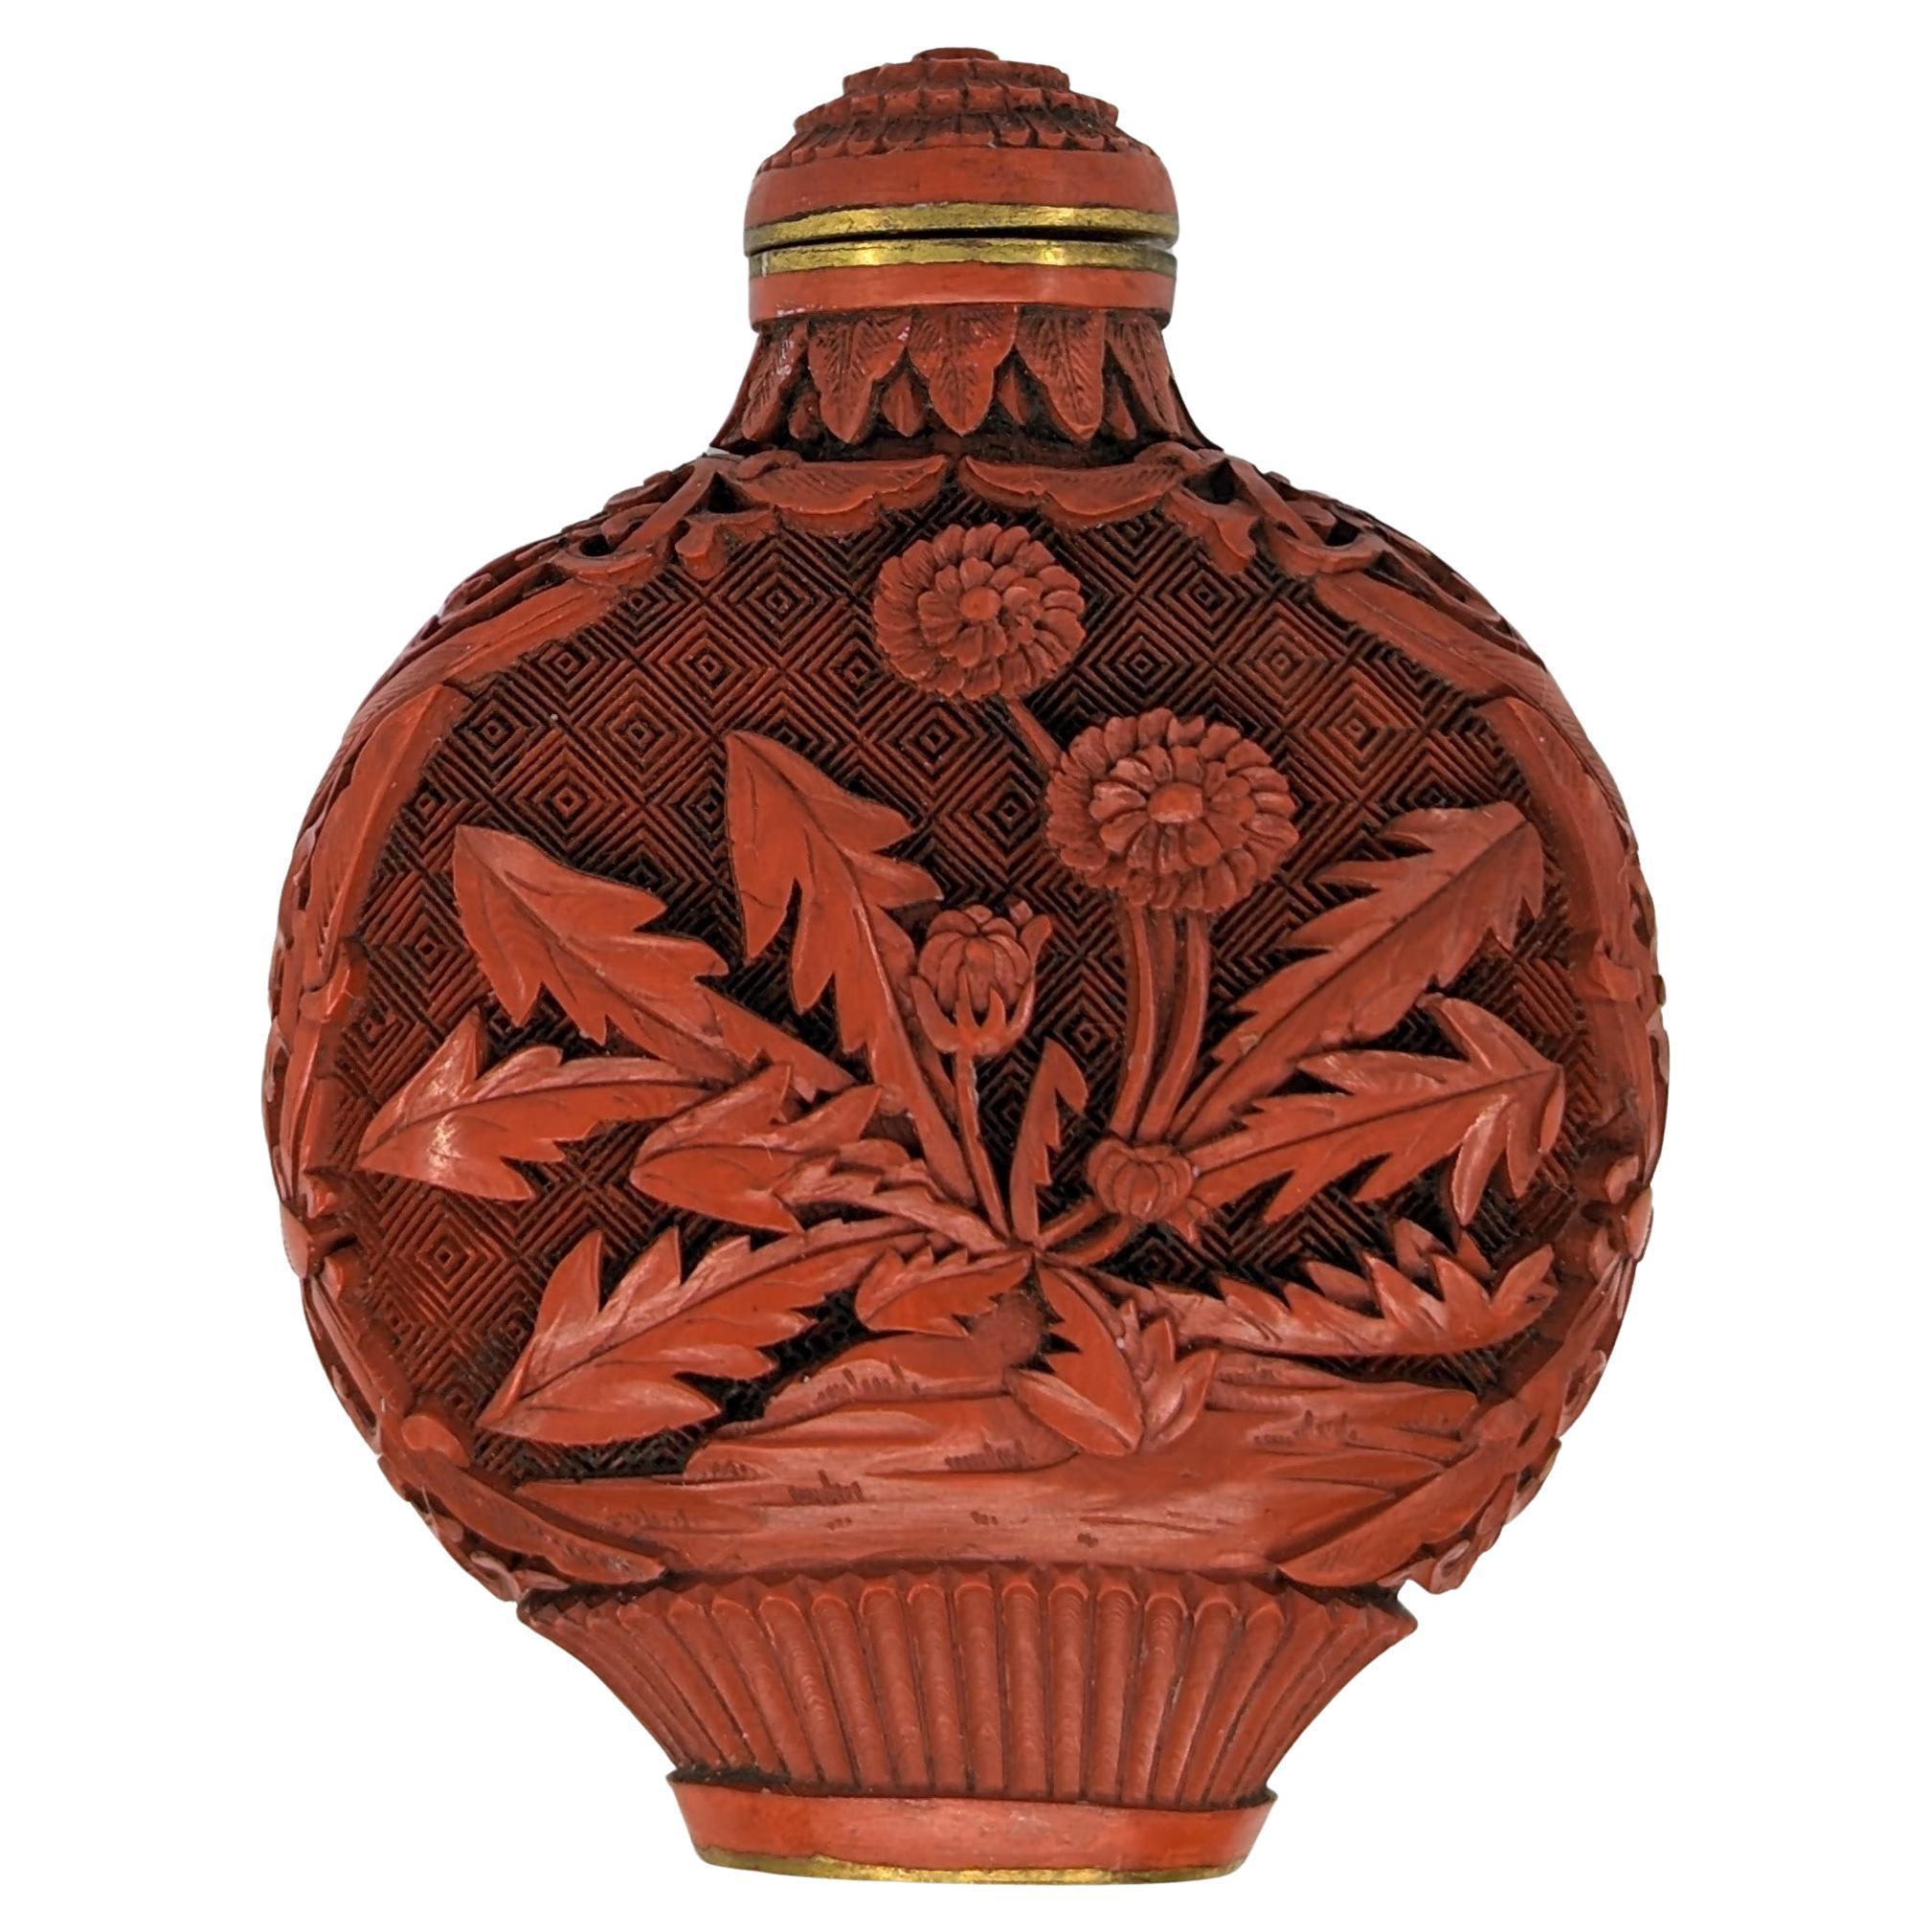 Ancienne bouteille à priser chinoise en cinabre rouge sculpté Chrysanthème 18-19ème siècle Qing